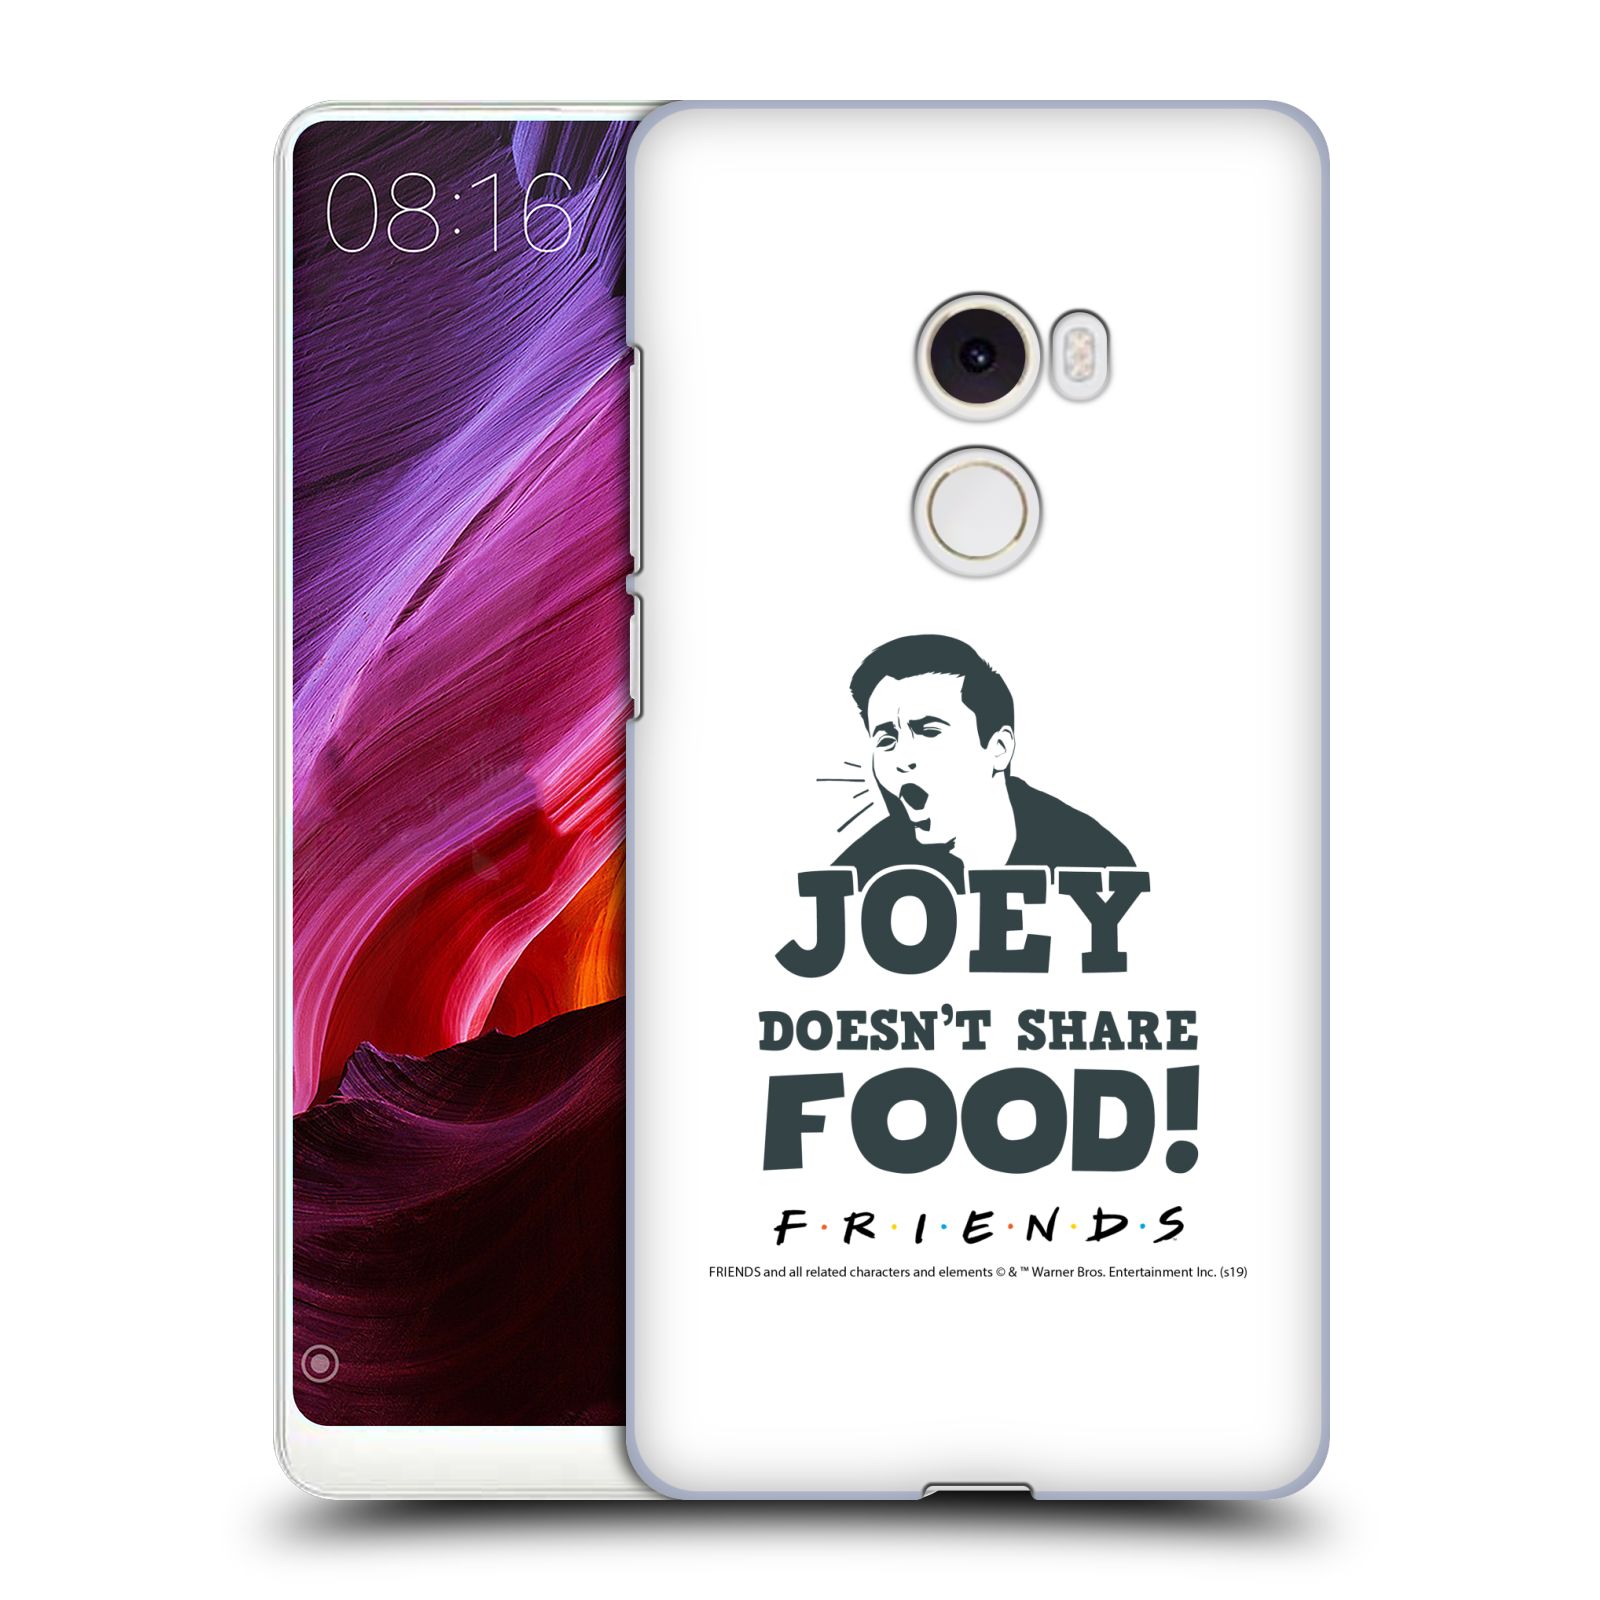 Pouzdro na mobil Xiaomi Mi Mix 2 - HEAD CASE - Seriál Přátelé - Joey se o jídlo nedělí